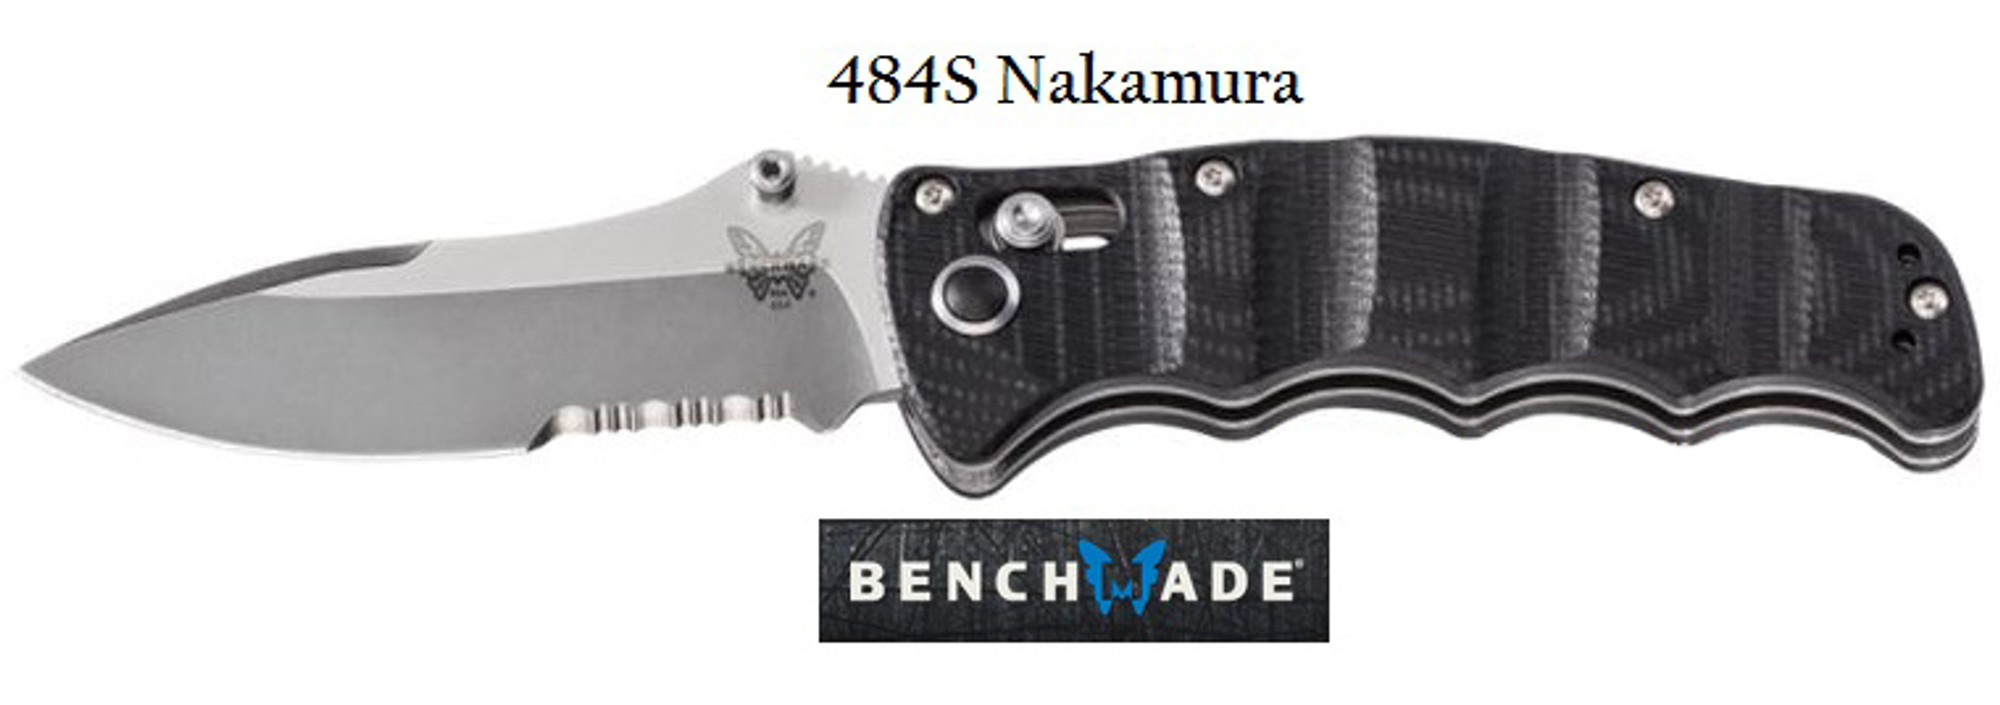 Benchmade 484S Nakamura Partially Serrated